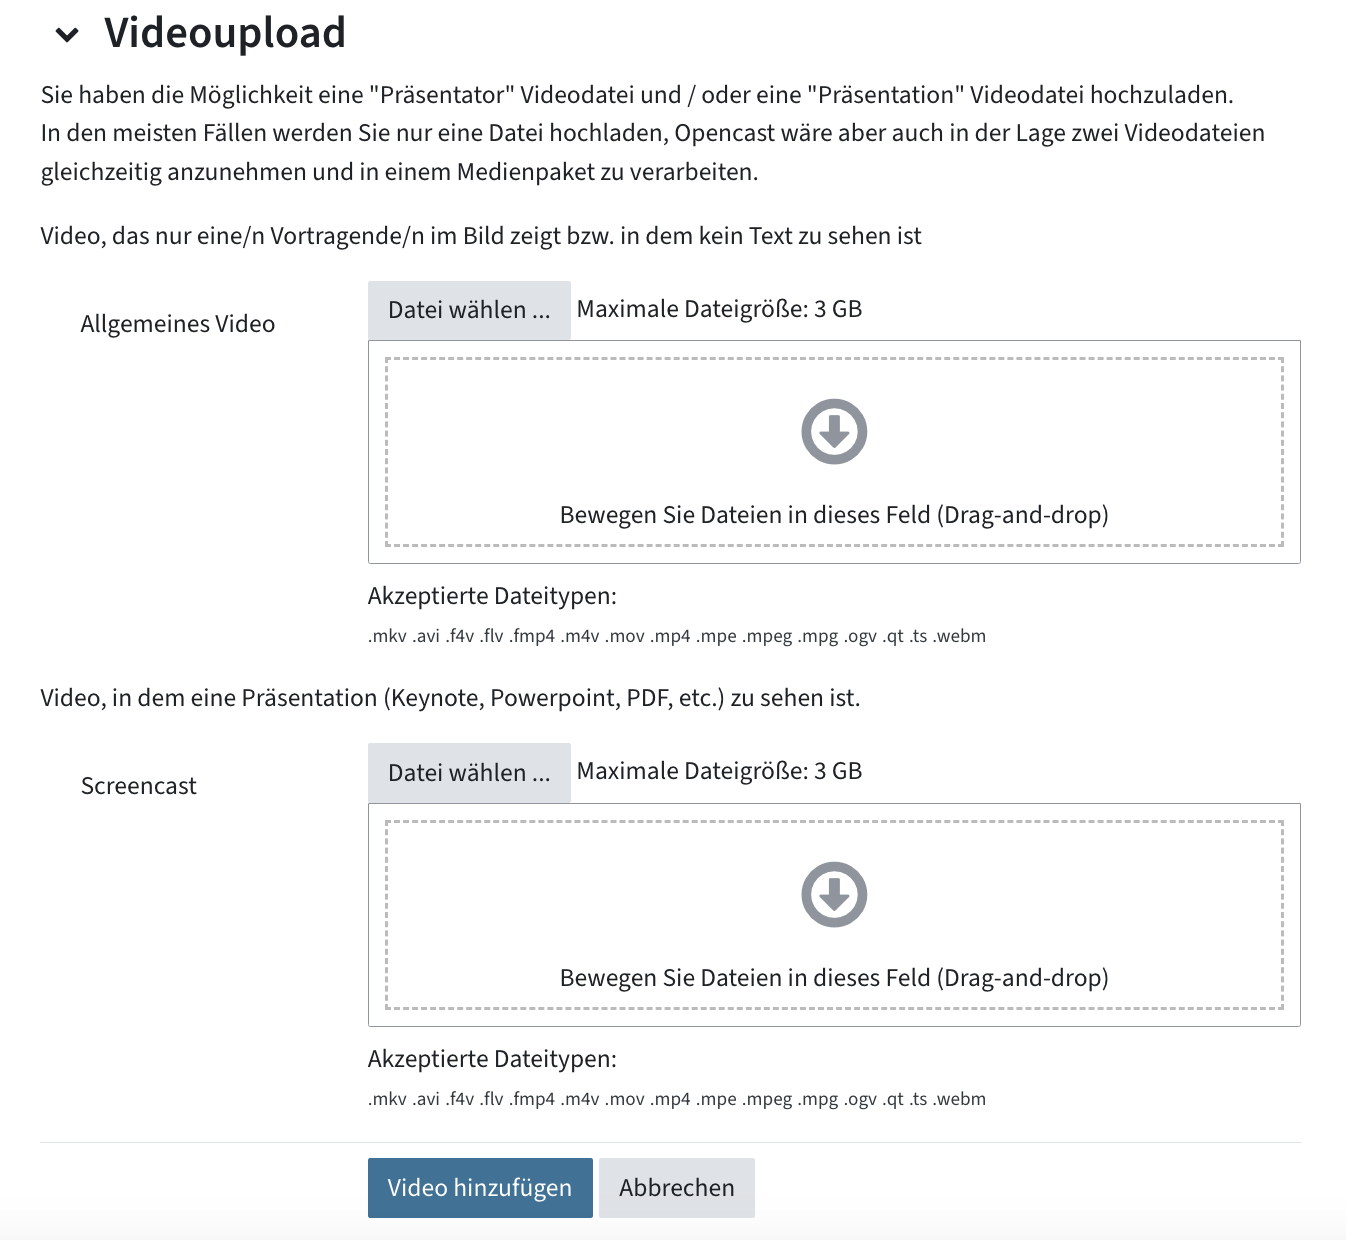 Menü zum Hochladen von Videos, dabei zwei Uploadbereiche für "Allgemeines Video" und "Screencast"